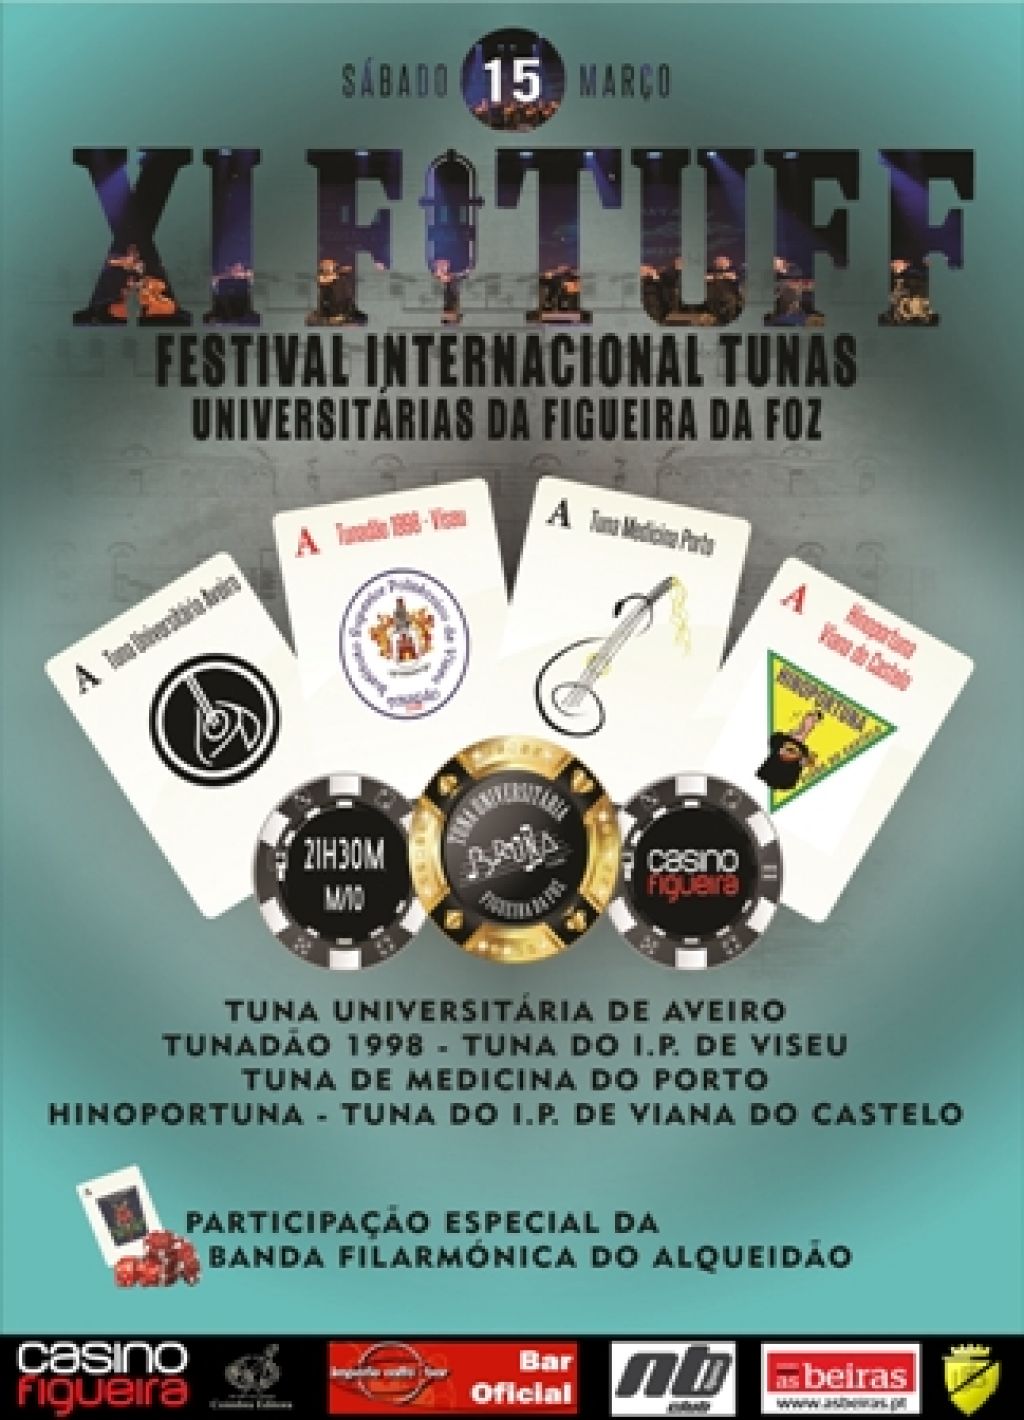 XI FITUFF - Festival Internacional de Tunas Universitárias da Figueira da Foz